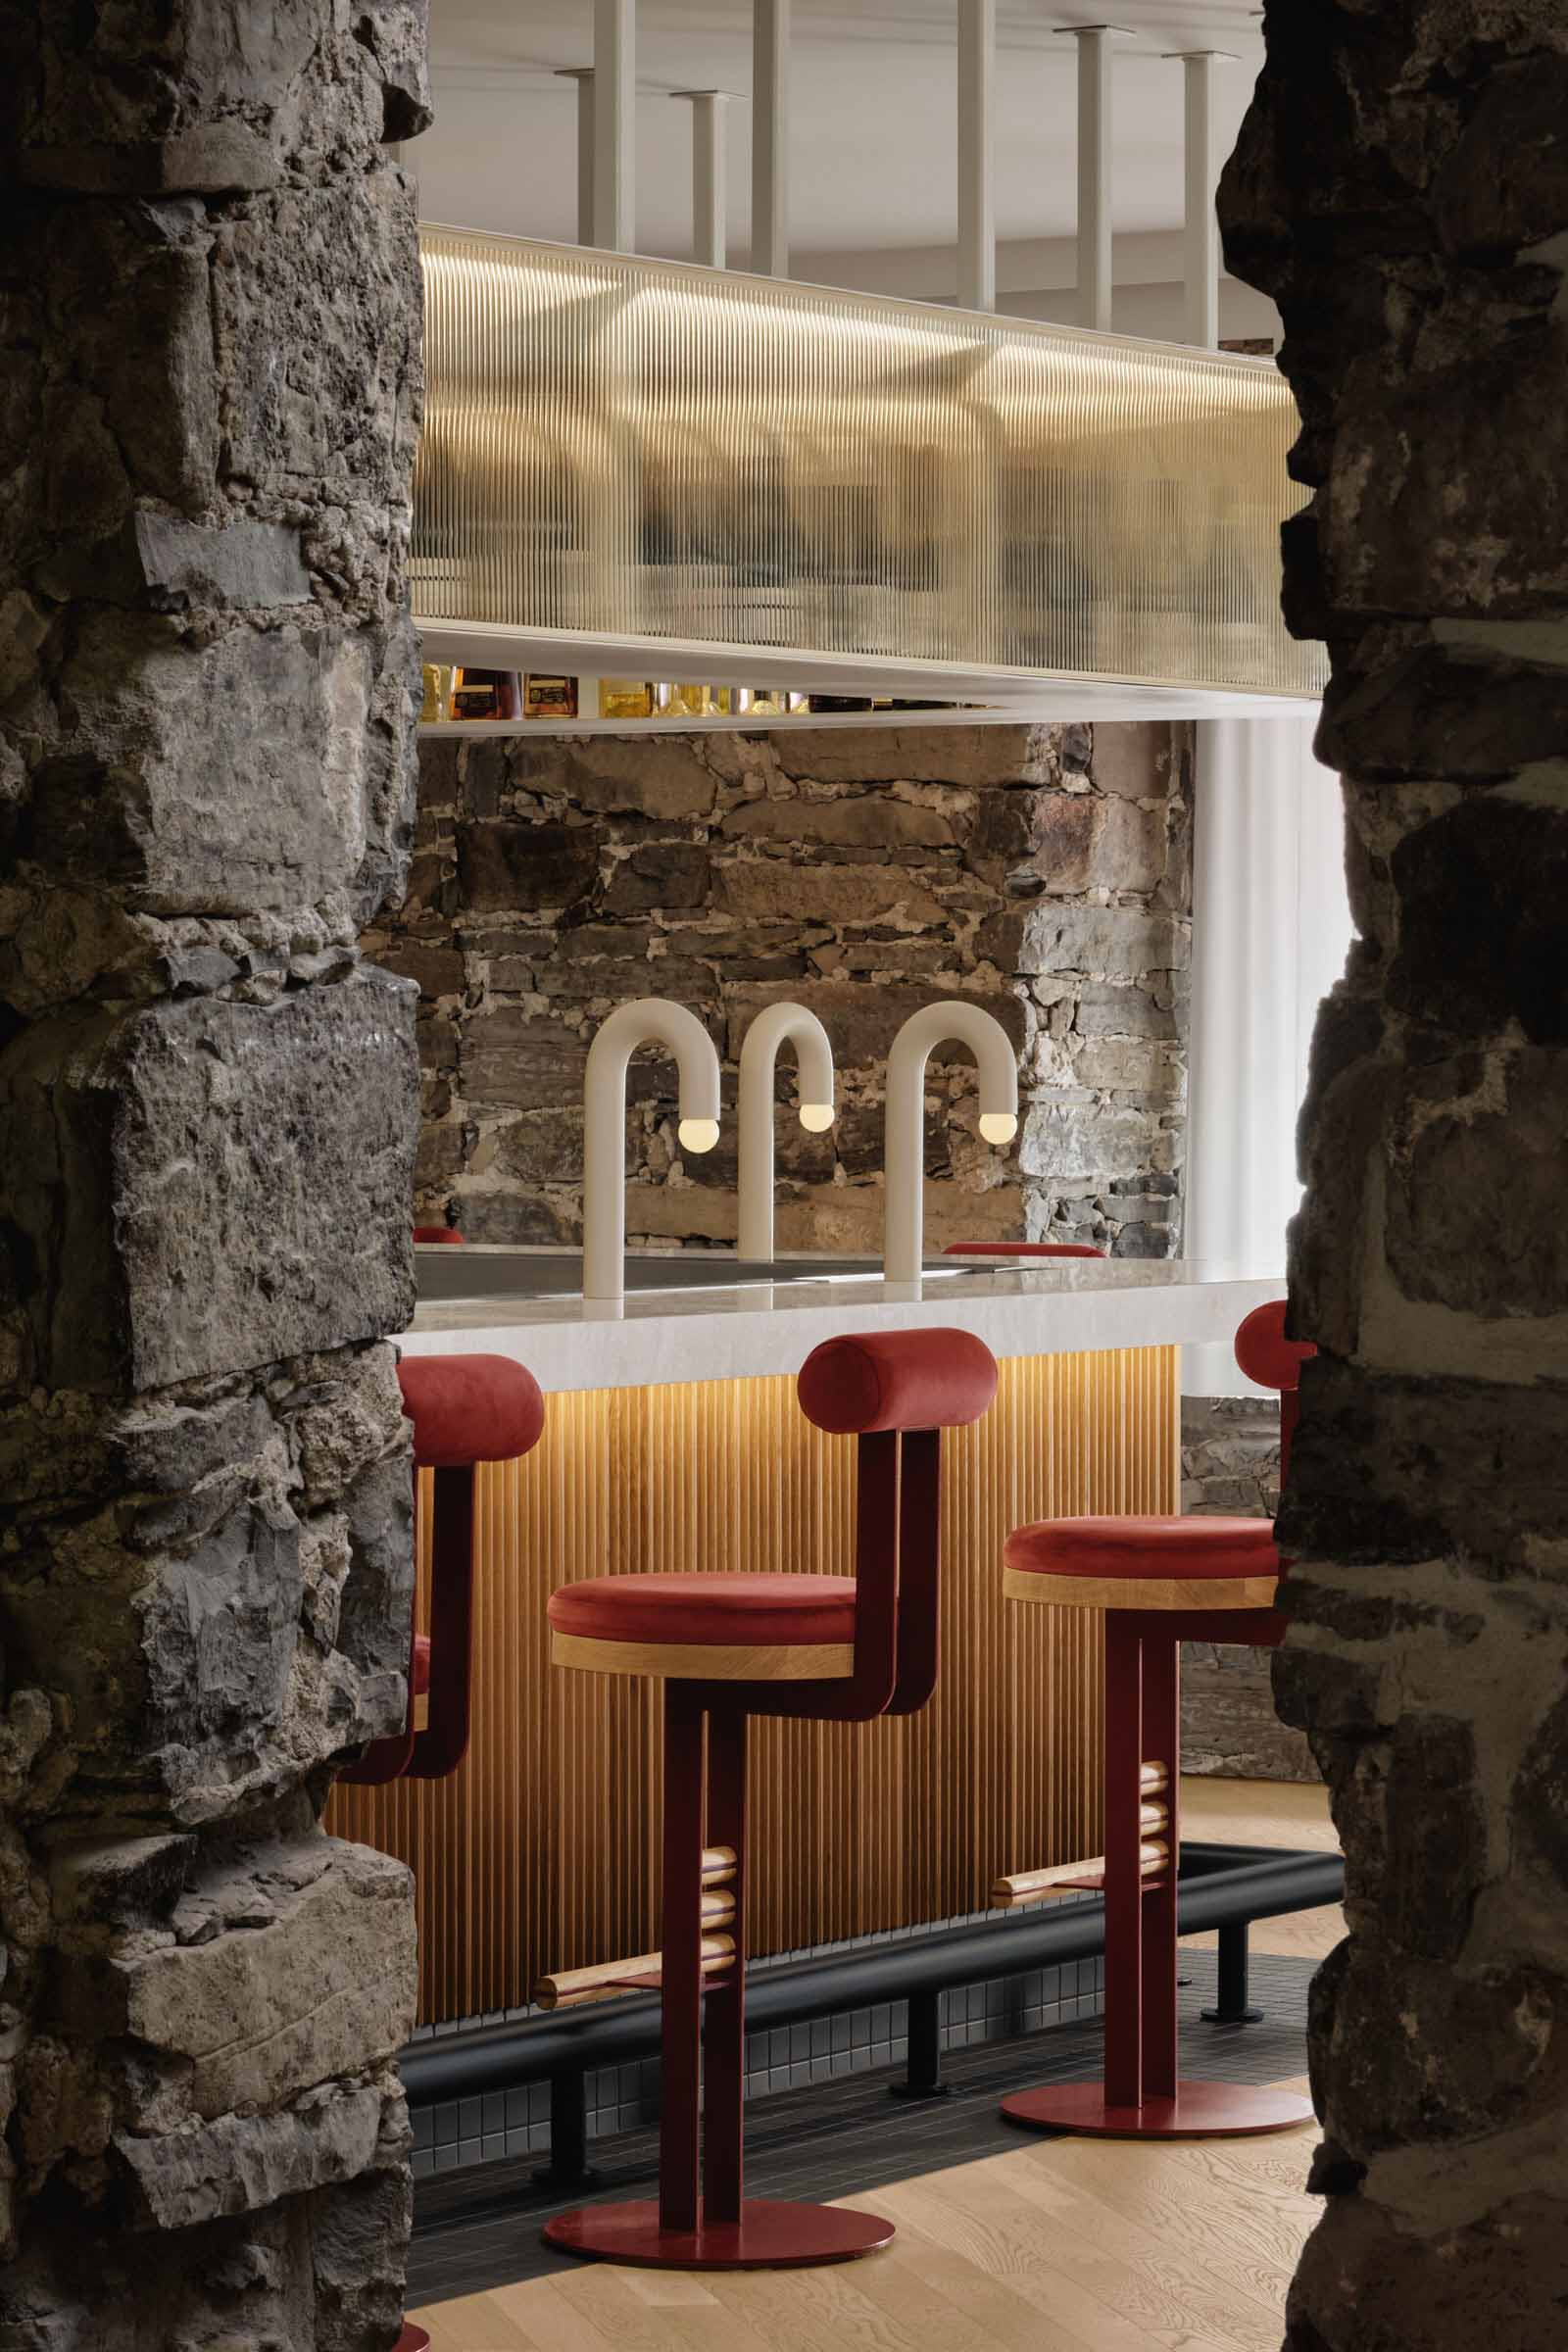 西餐厅设计,Isern Serra Studio,休闲餐厅设计,蒙特利尔,现代风格餐厅设计案例,酒吧餐厅